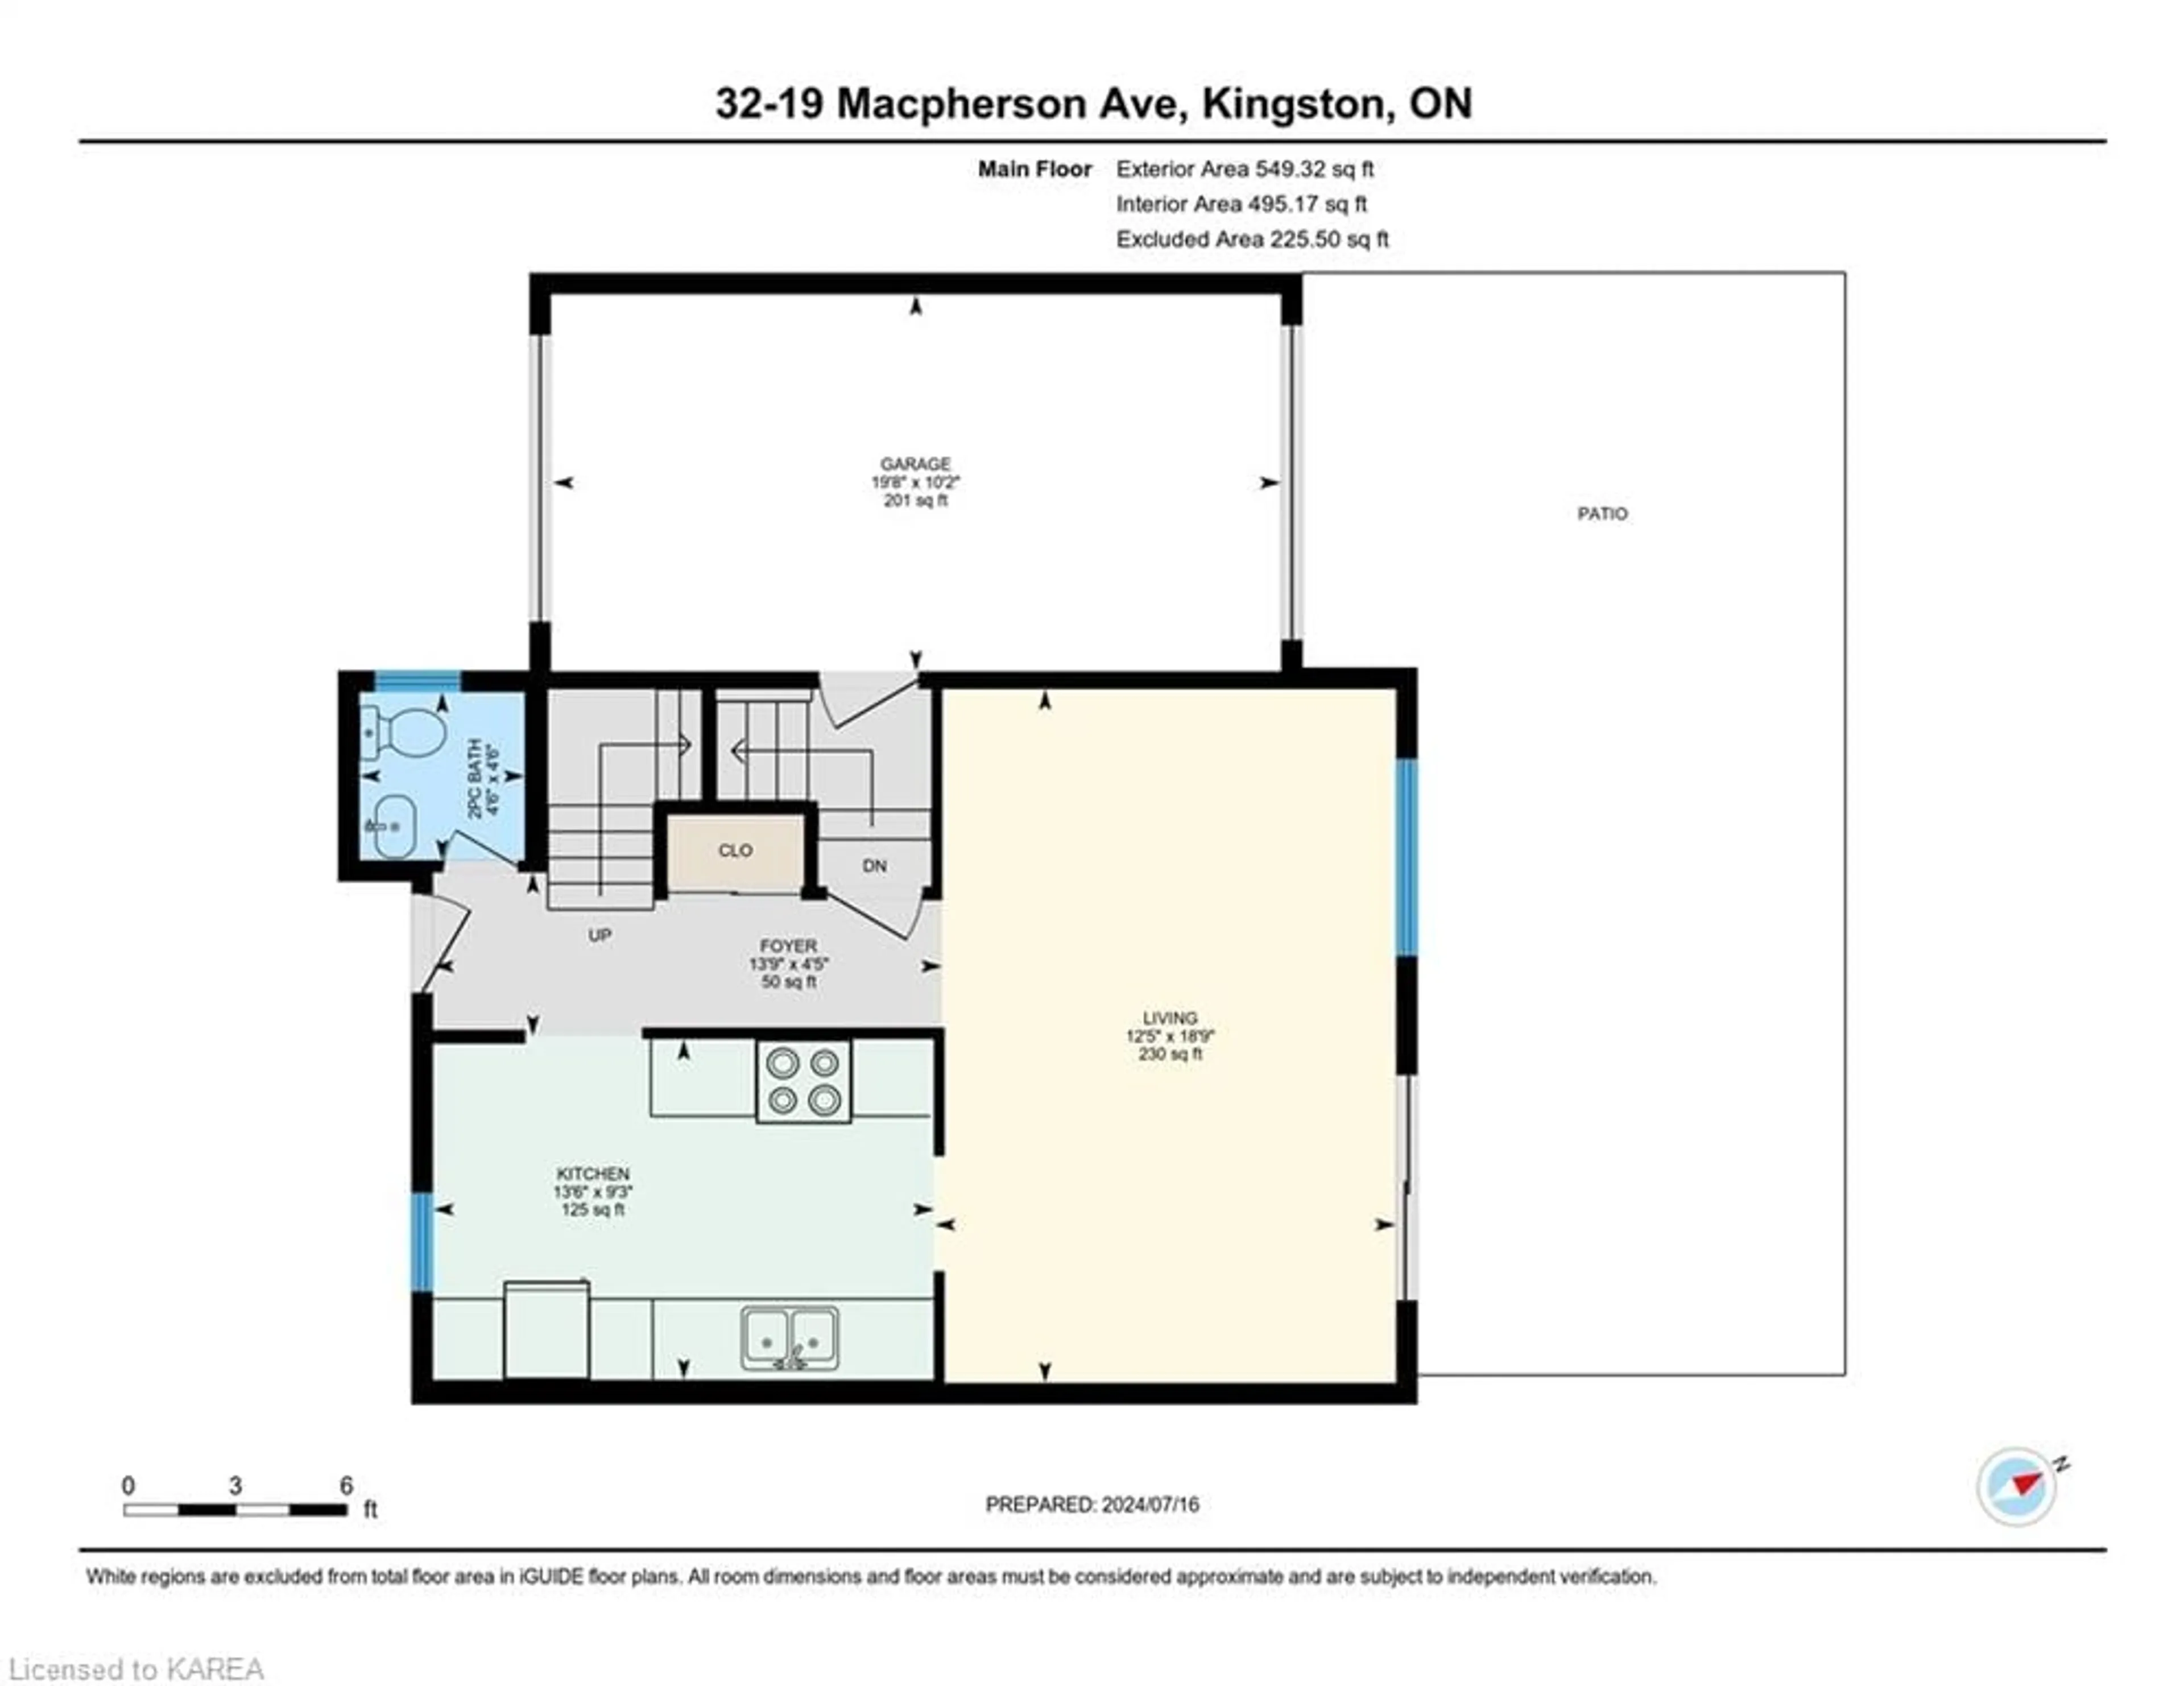 Floor plan for 19 Macpherson Ave #32, Kingston Ontario K7M 6W4